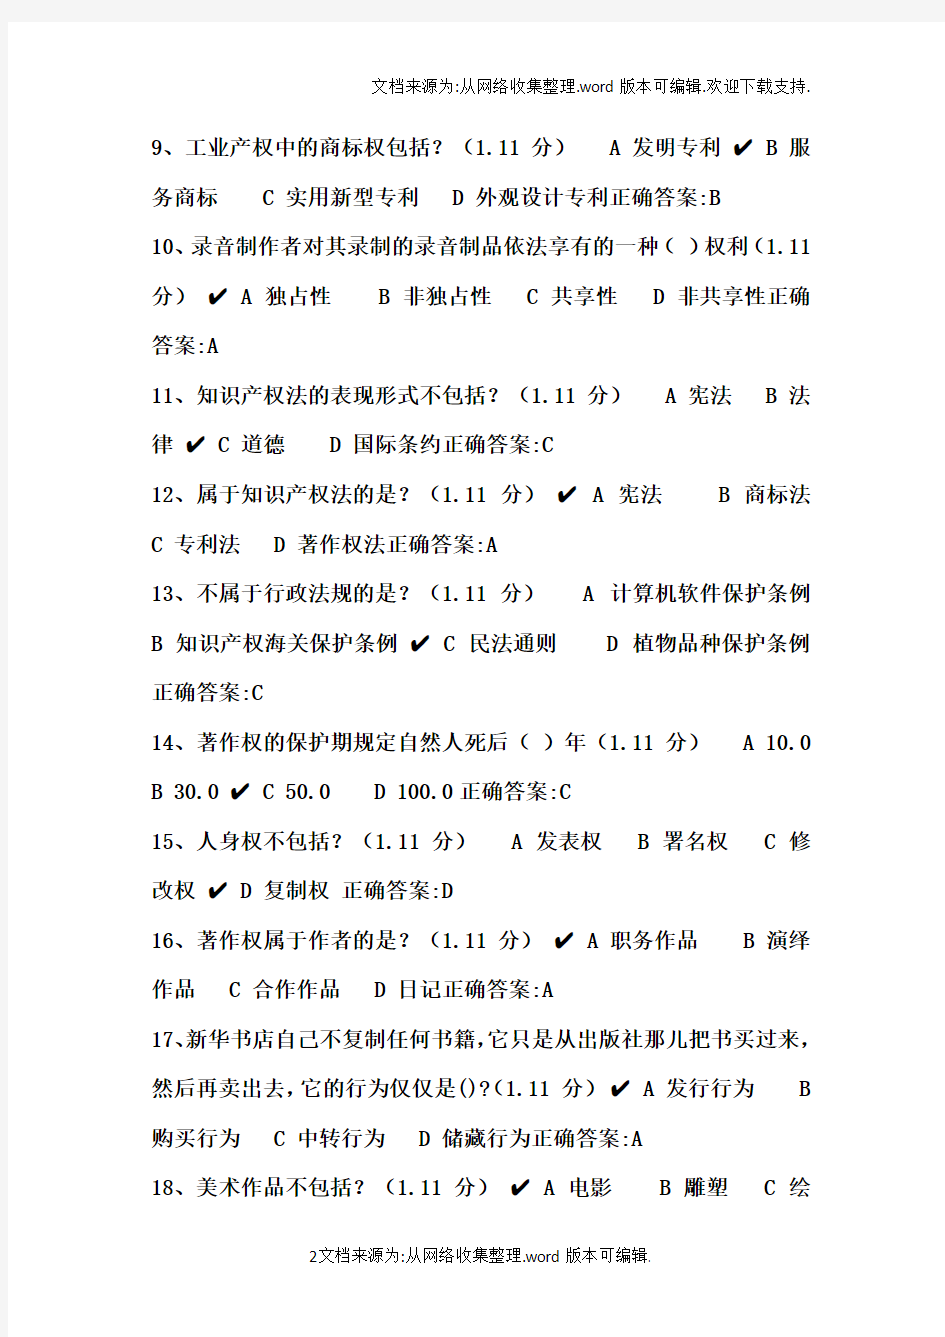 2020年重庆市公需科目知识产权考试试题及答案(供参考)